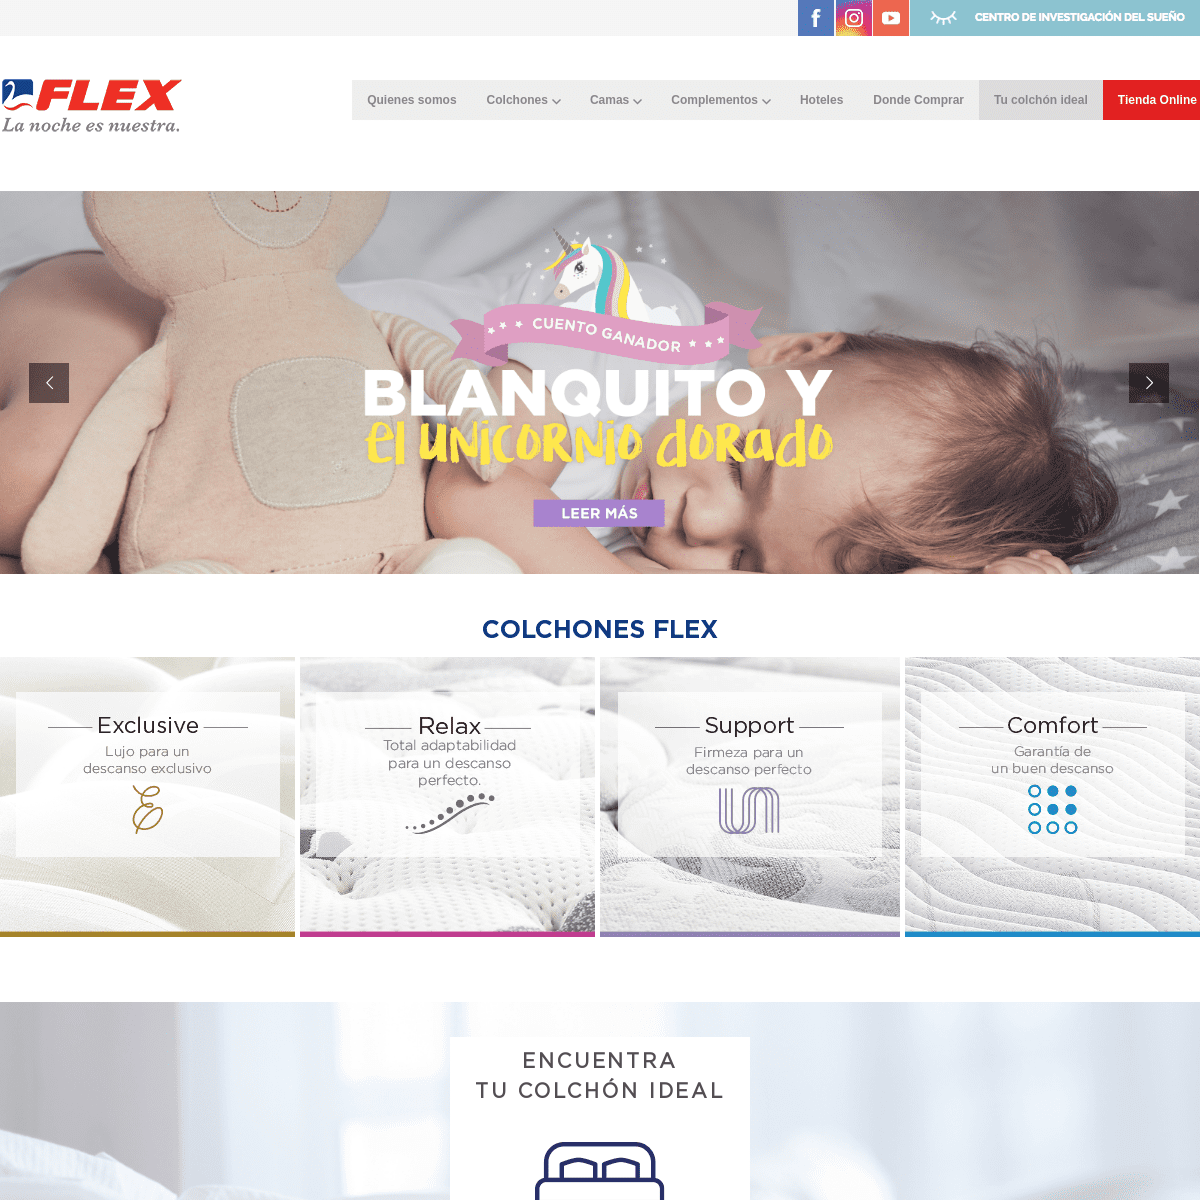 Flex - Conoce el colchón ideal para ti - Ofertas Online